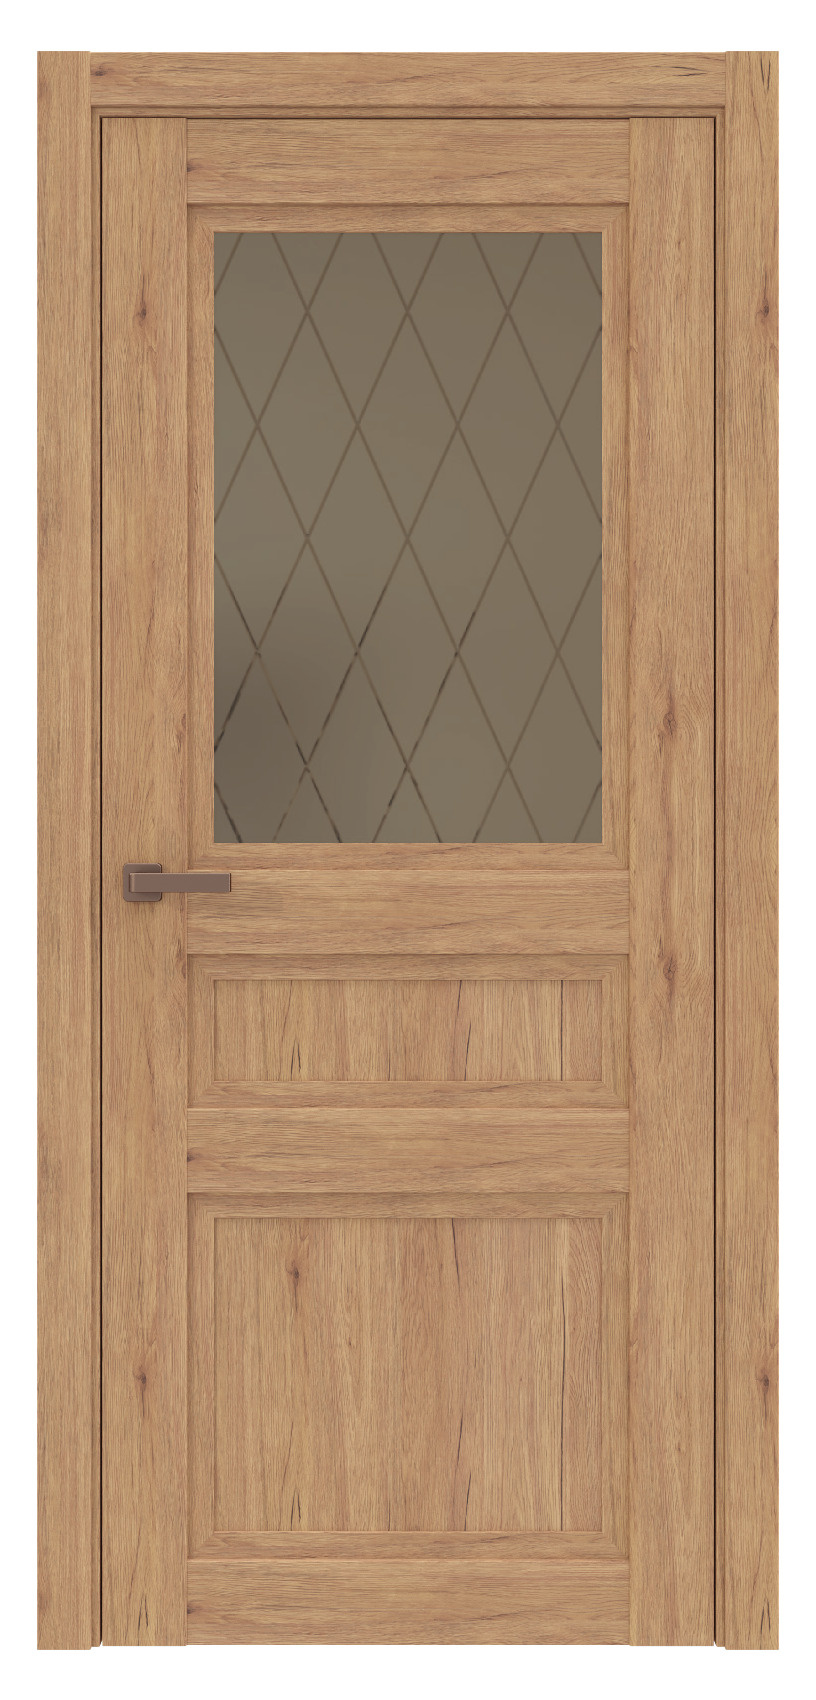 Questdoors Межкомнатная дверь QPS4, арт. 17556 - фото №1